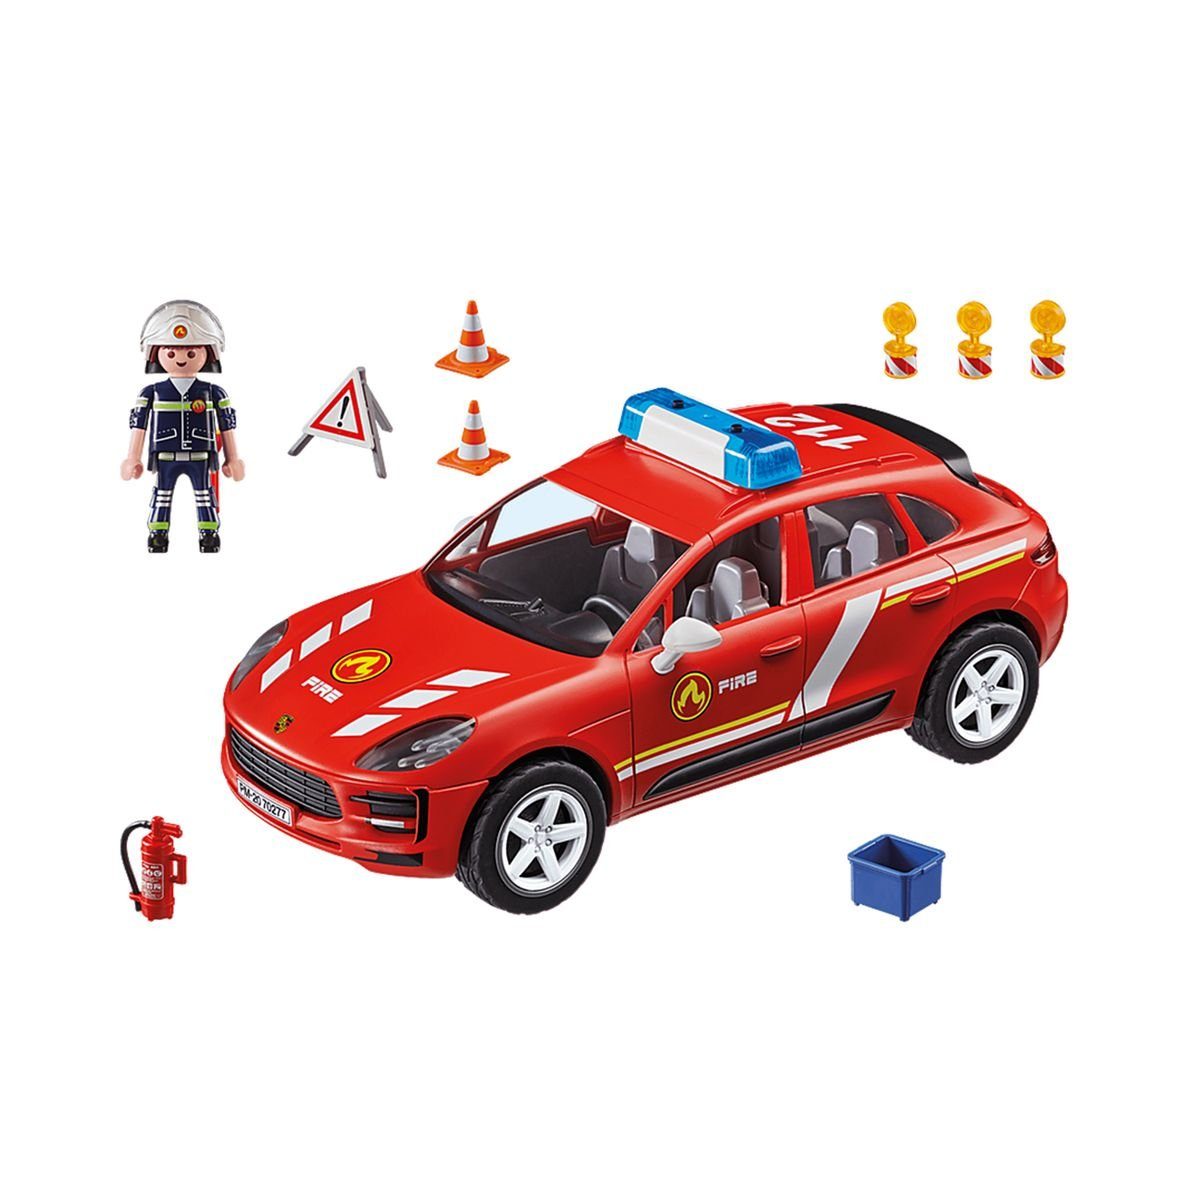 Playmobil® Spielzeug-Auto PLAYMOBIL® 70277 - Porsche - Macan S Feuerwehr